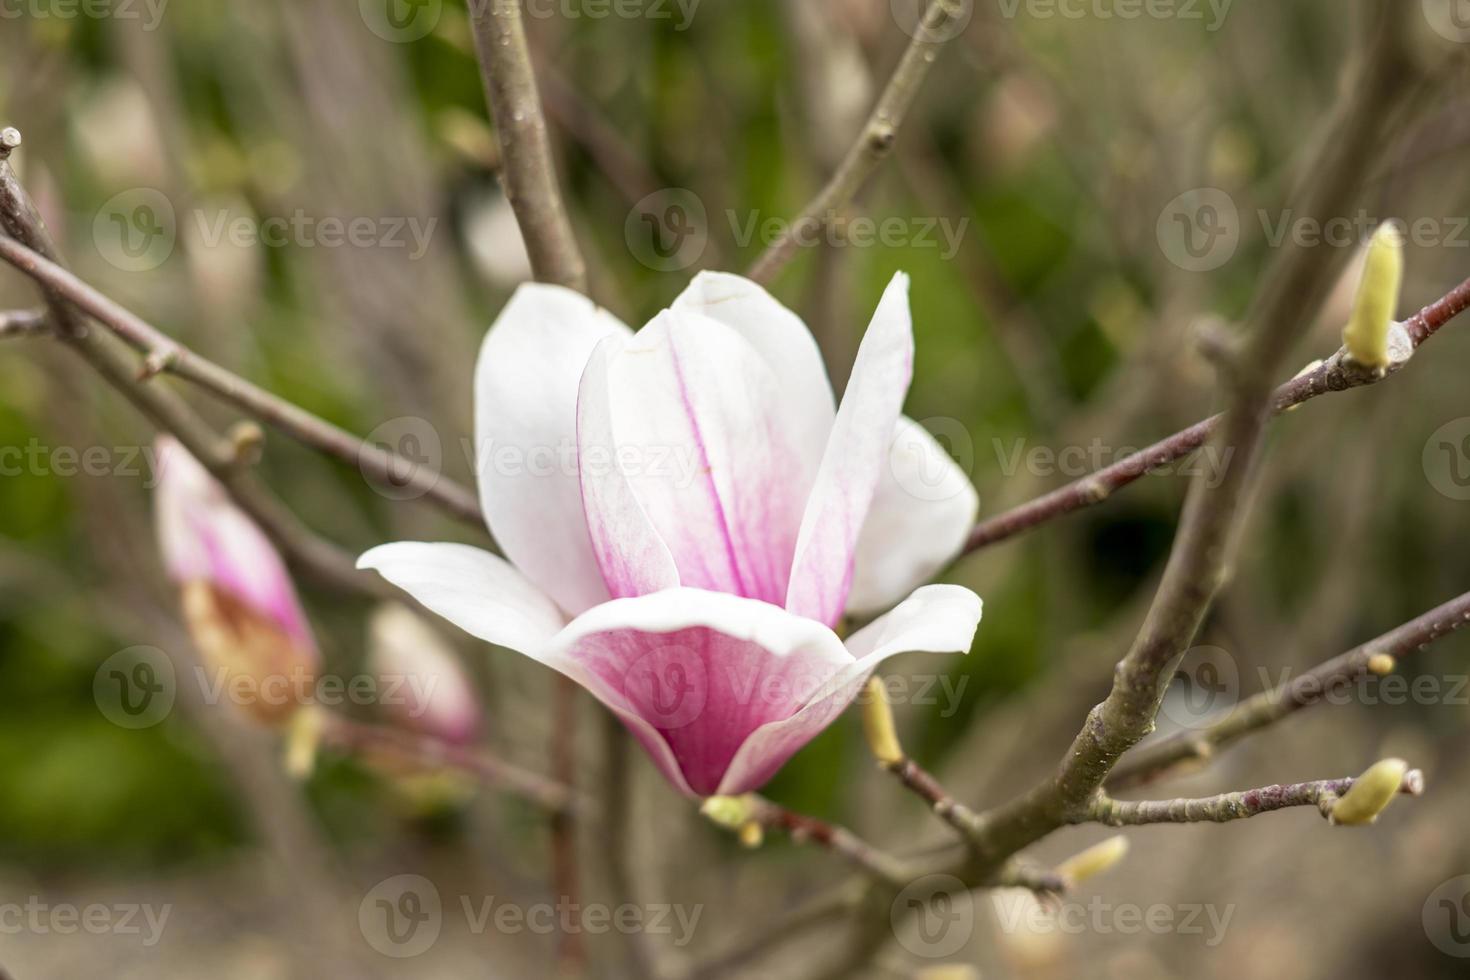 brote de flor de magnolia rosa en rama de árbol y brotes verdes sobre fondo natural al aire libre primavera y plantas florecientes jardinería paisajística foto